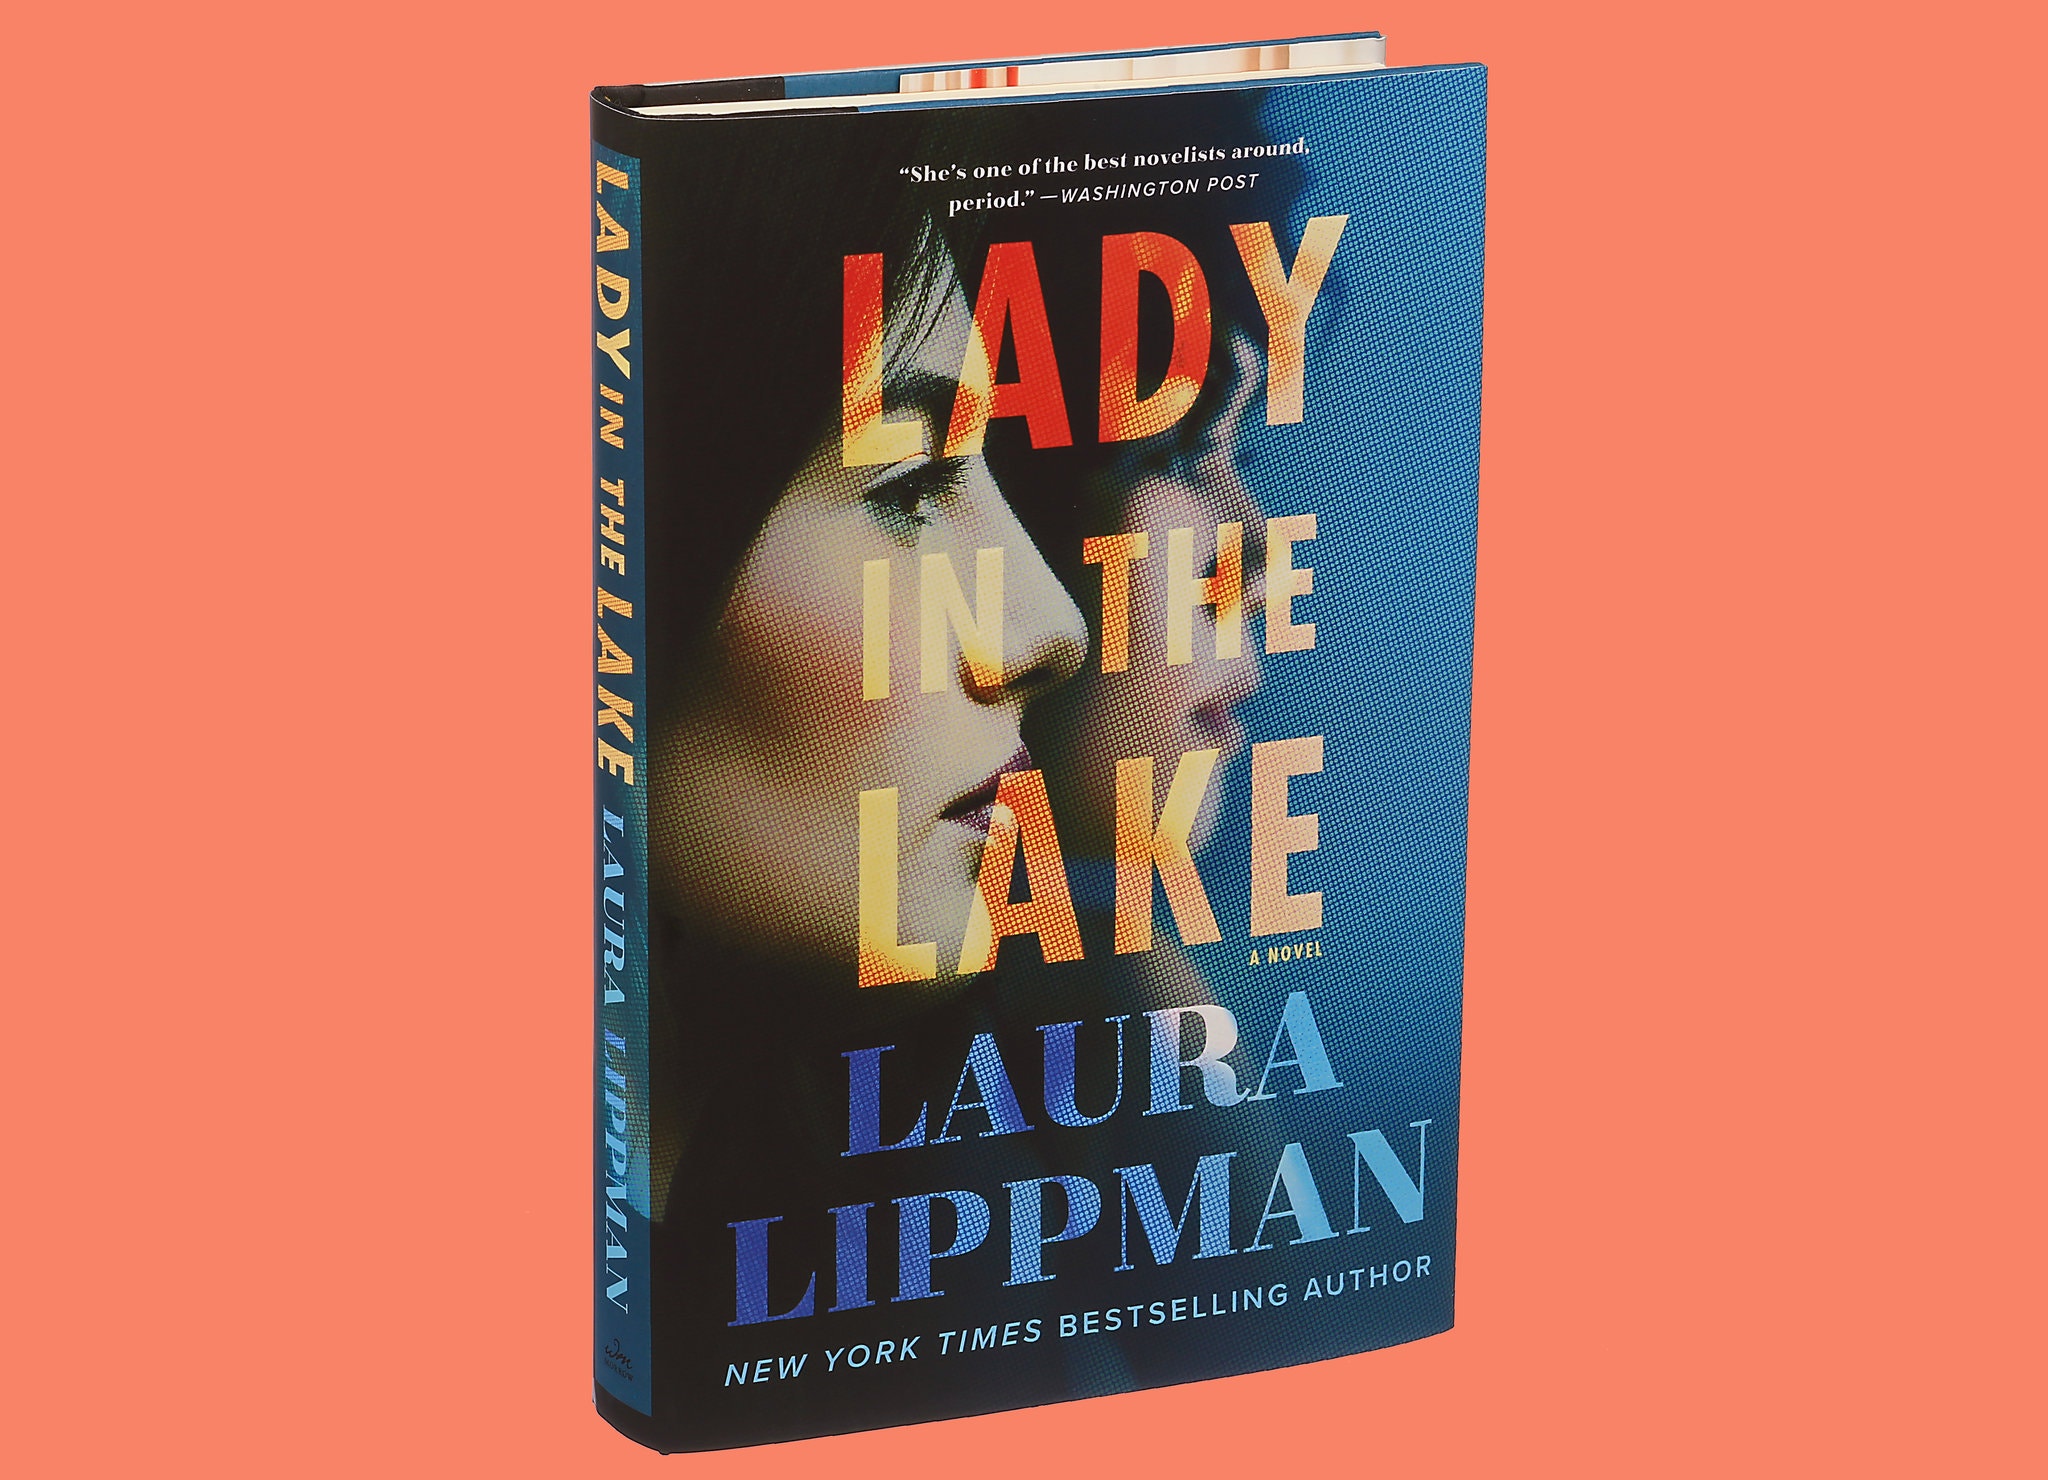 Stephen King fait la critique de "Lady in the Lake" (Laura Lippman